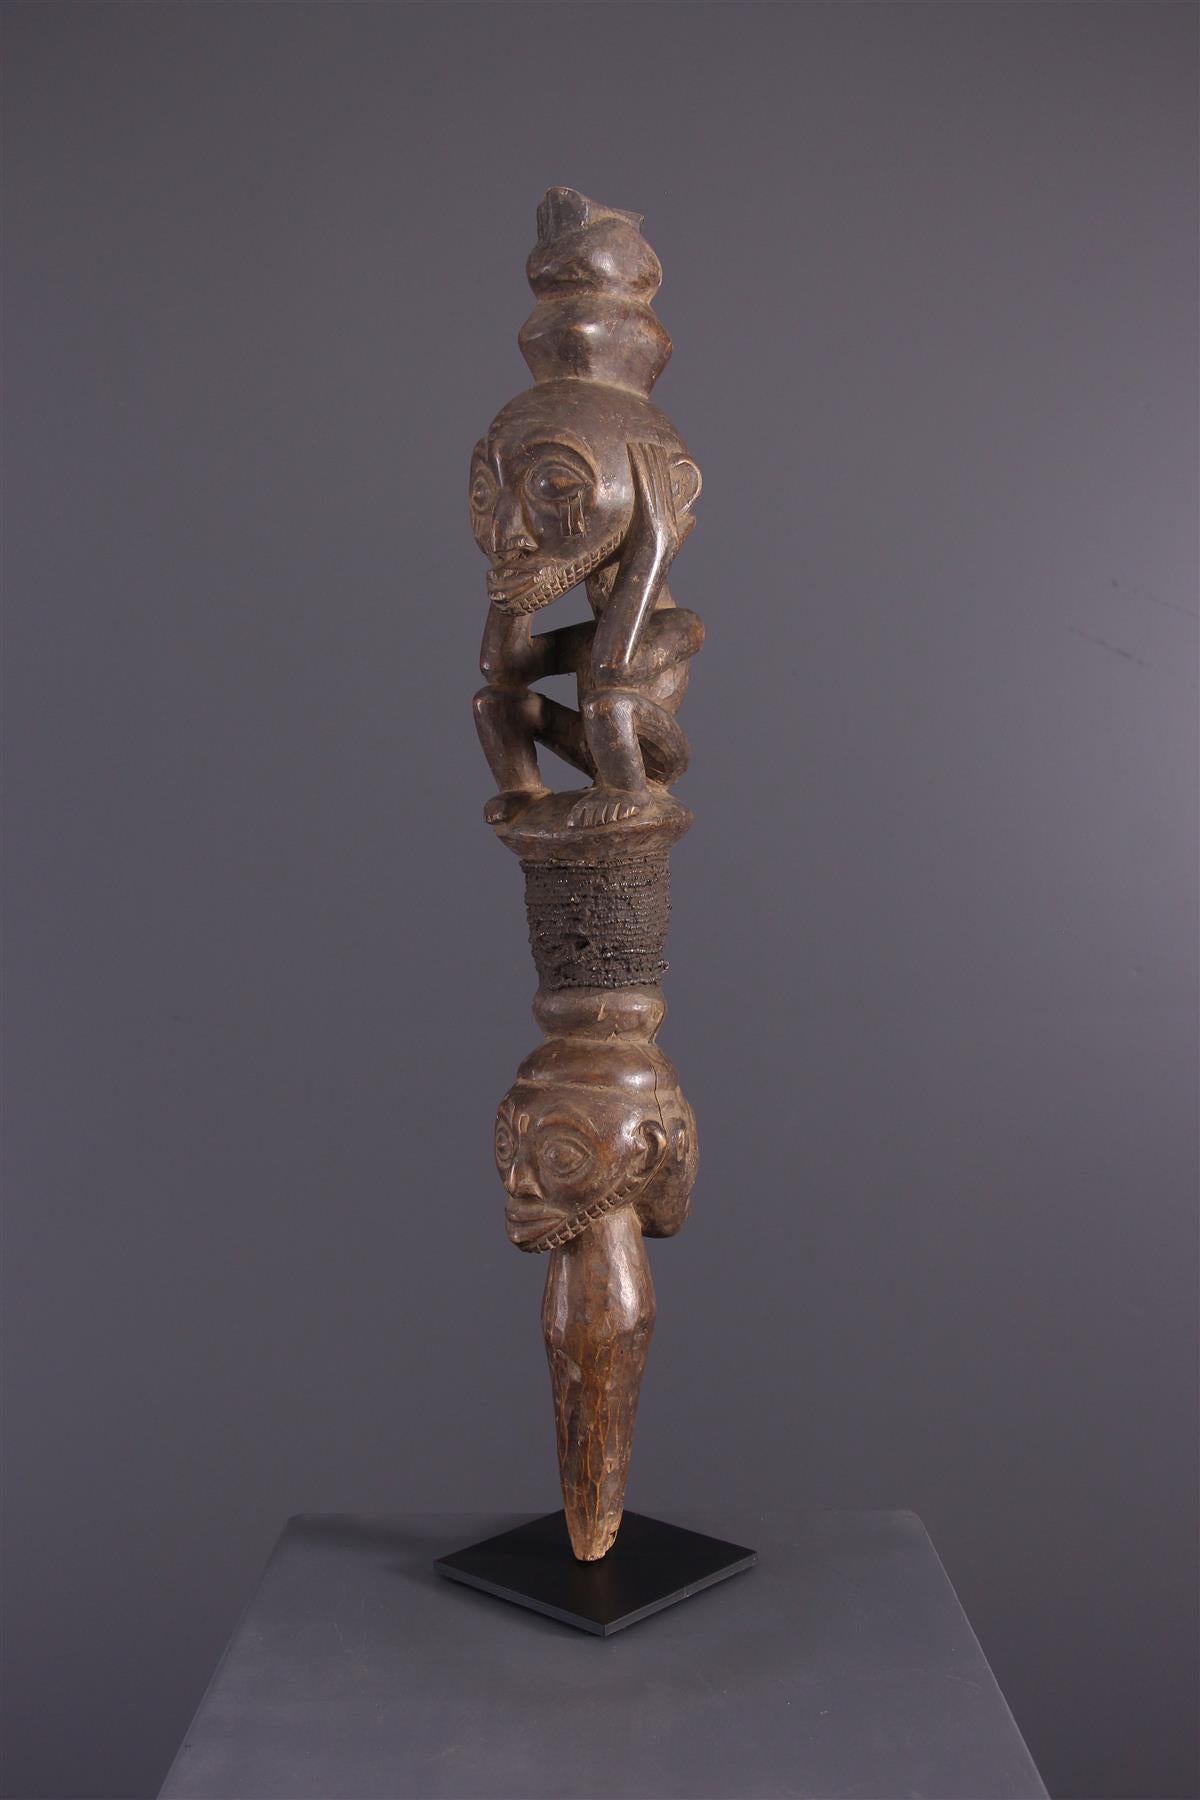 Barre de commandement Kusu
Ce bâton prestigieux parmi les regalia des chefs est composé de différentes sections sculptées qui forment un langage iconographique lié à l'histoire de l'ancêtre ou de son clan, comme les kibangos des Luba. 
La section